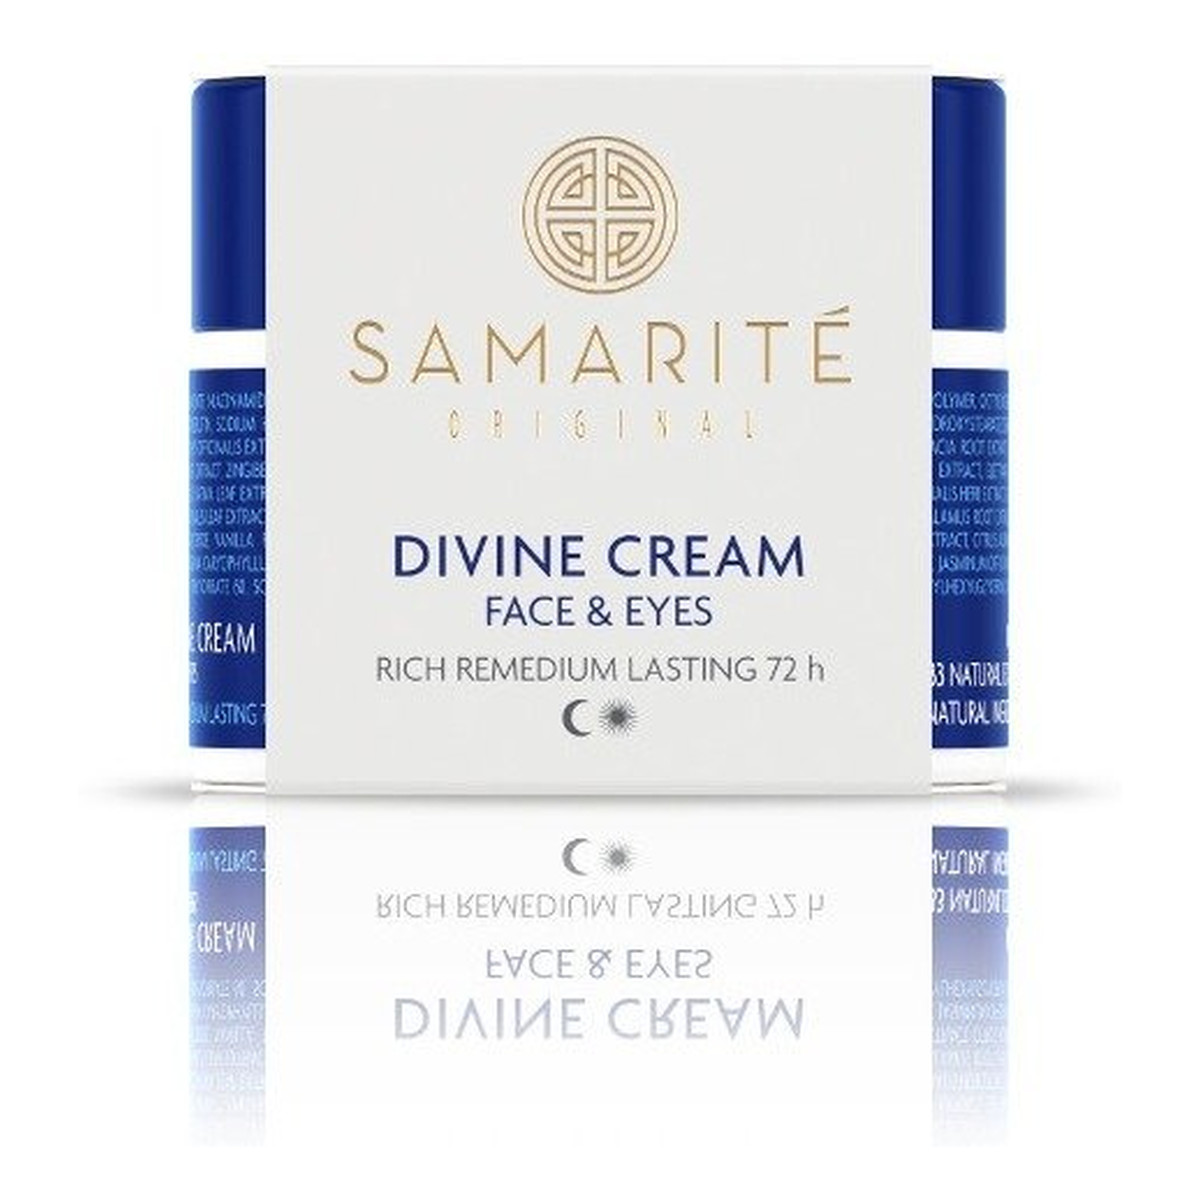 Samarite Divine Cream Face & Eyes odmładzający krem do twarzy 45ml